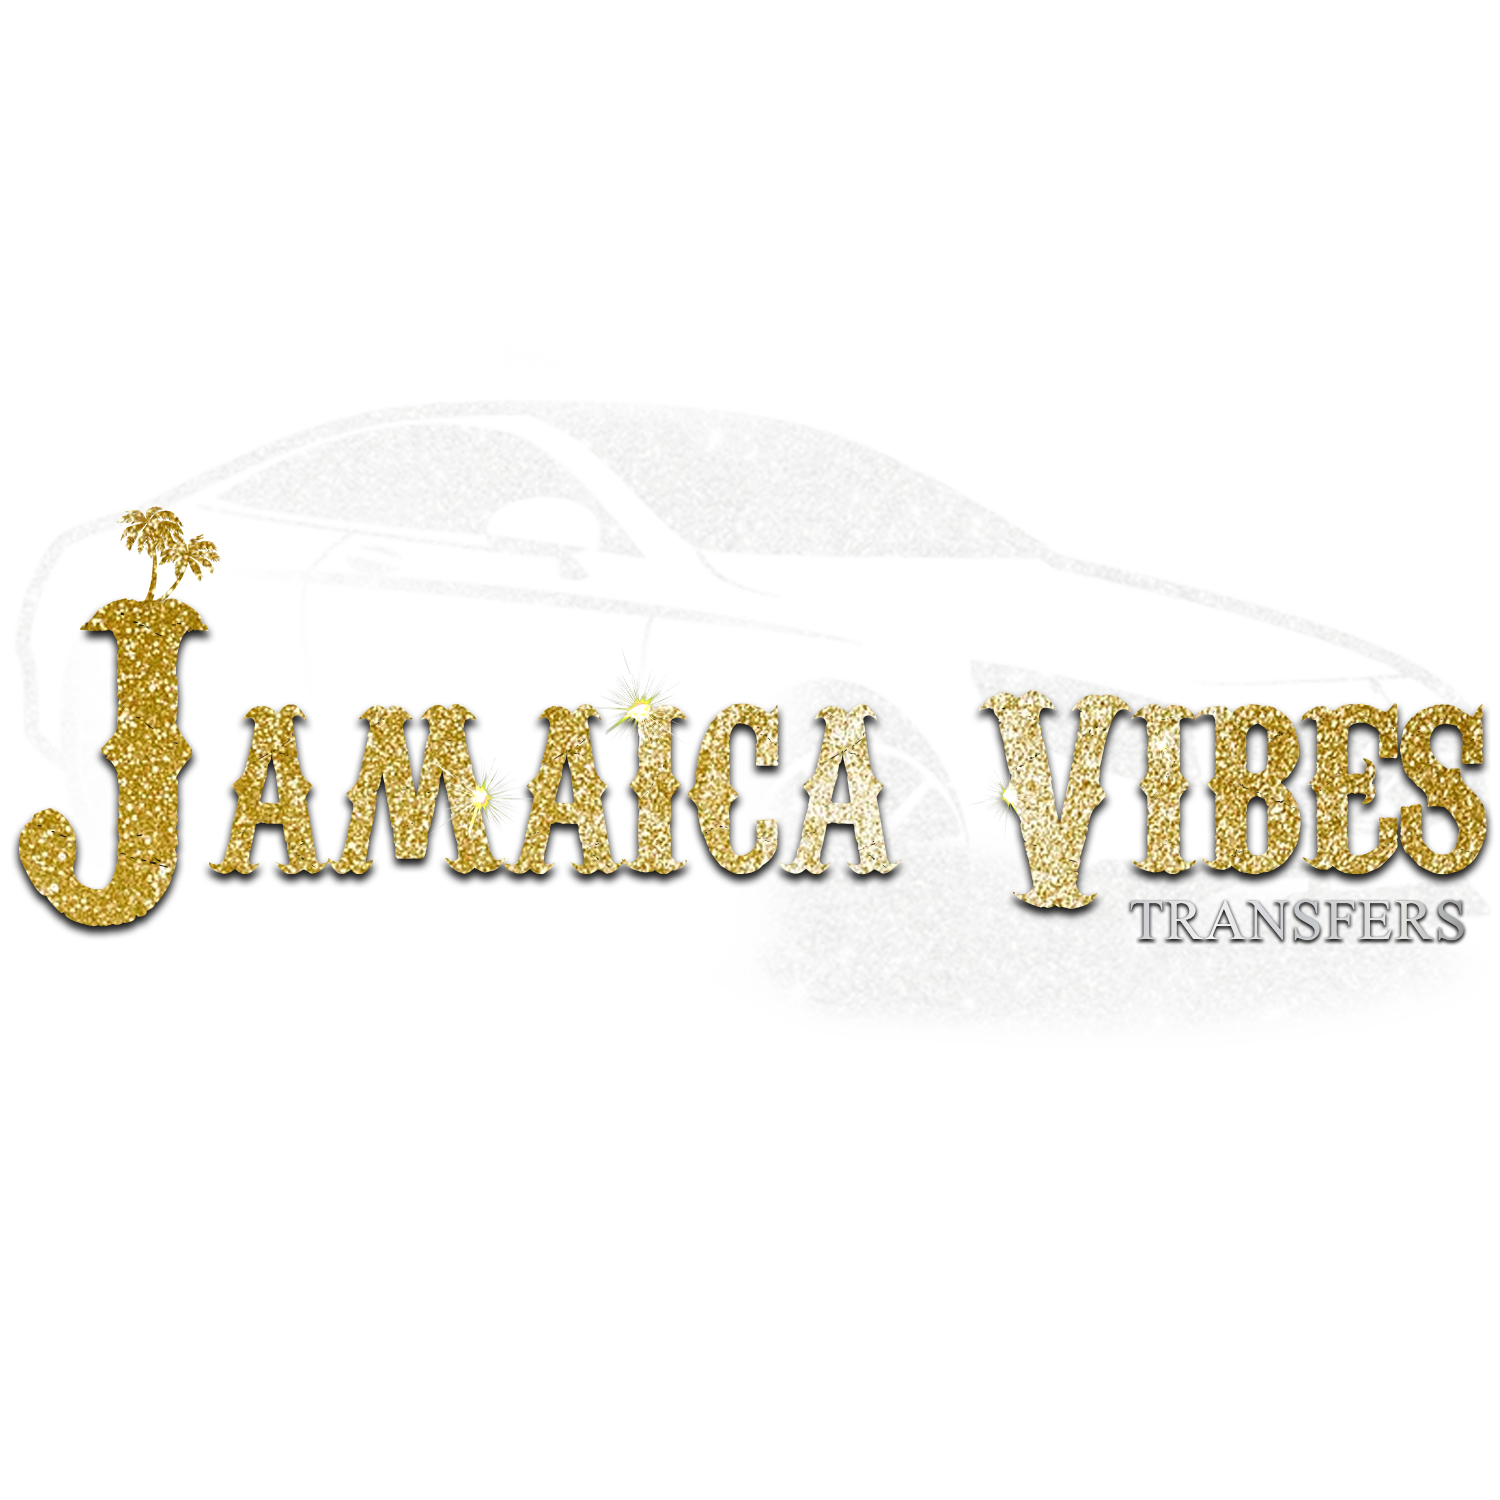 Jamaica Vibes Transfers copy